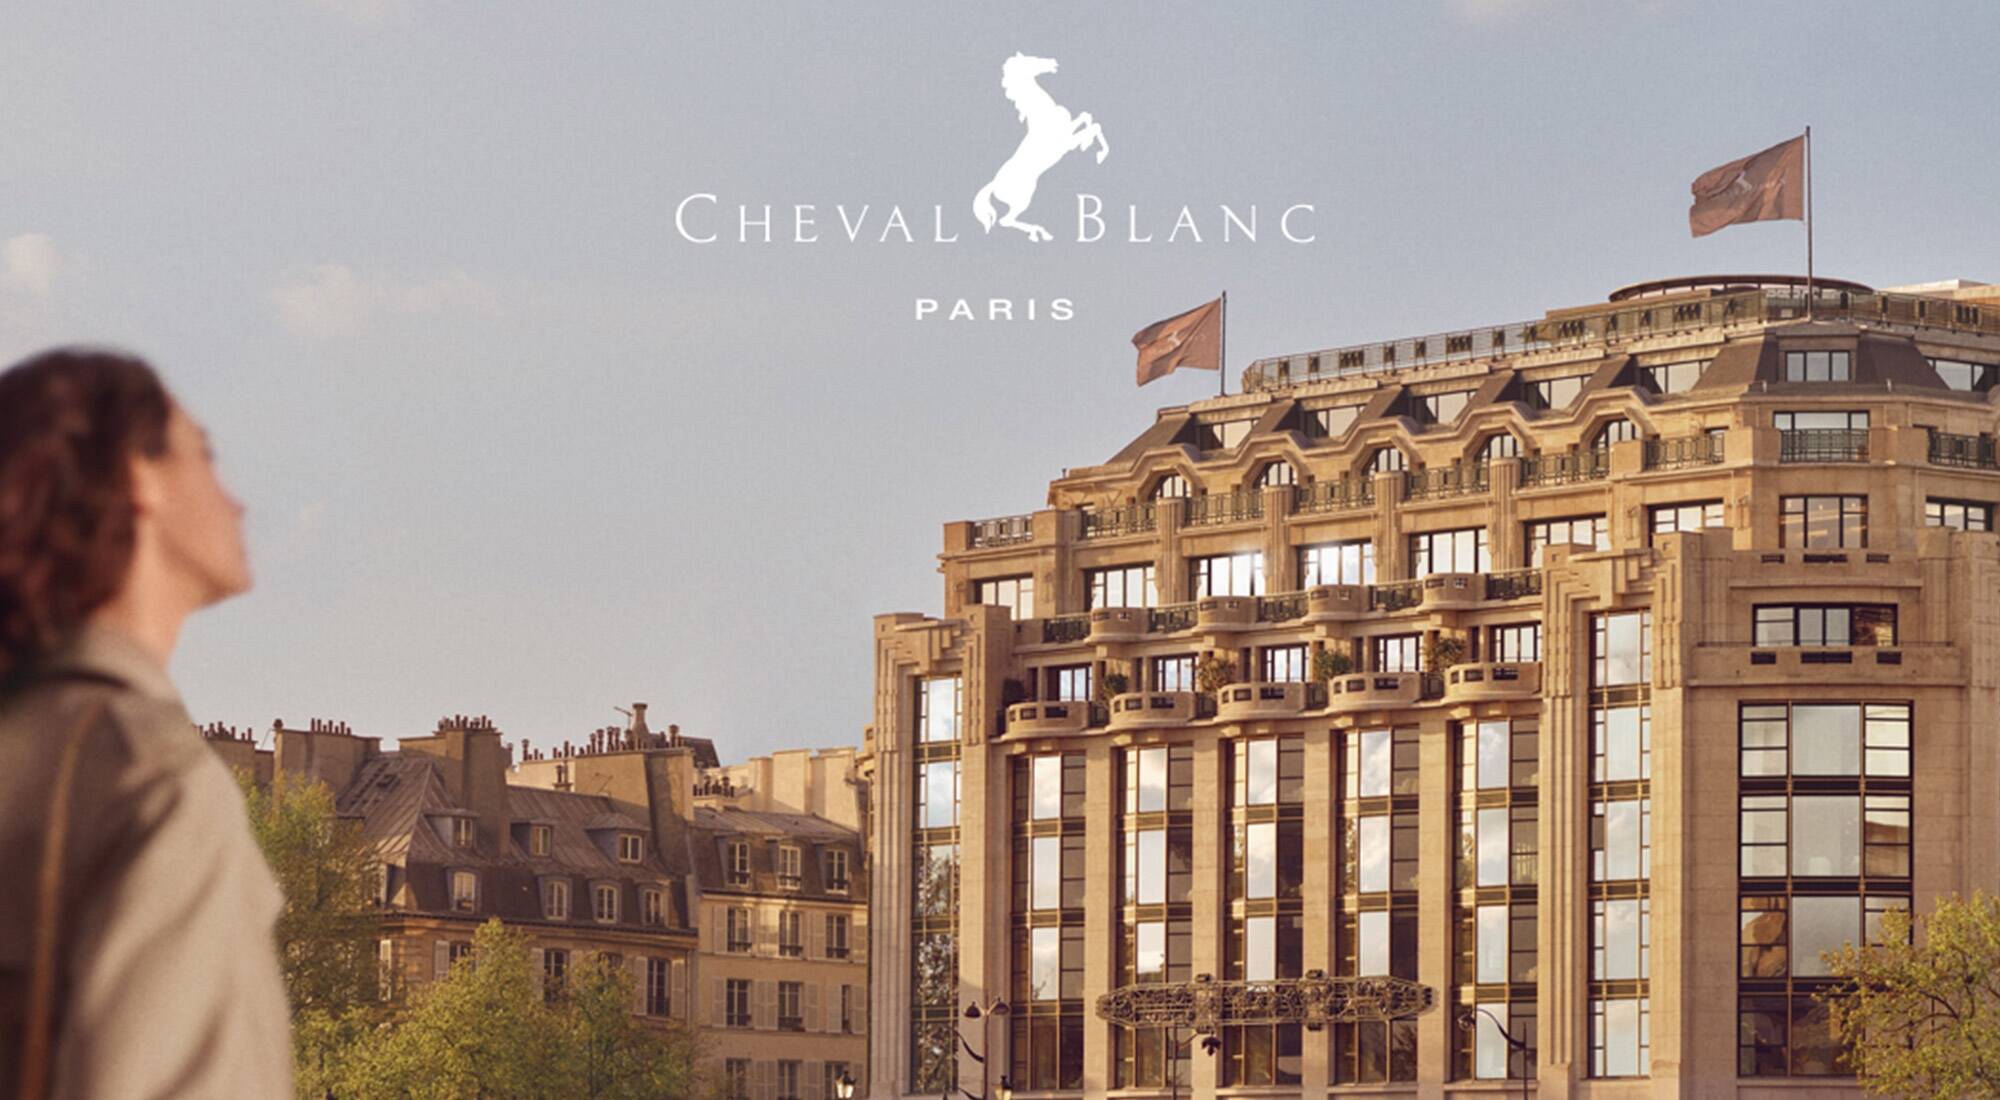 A night at Cheval Blanc Paris - With Ladyjoe